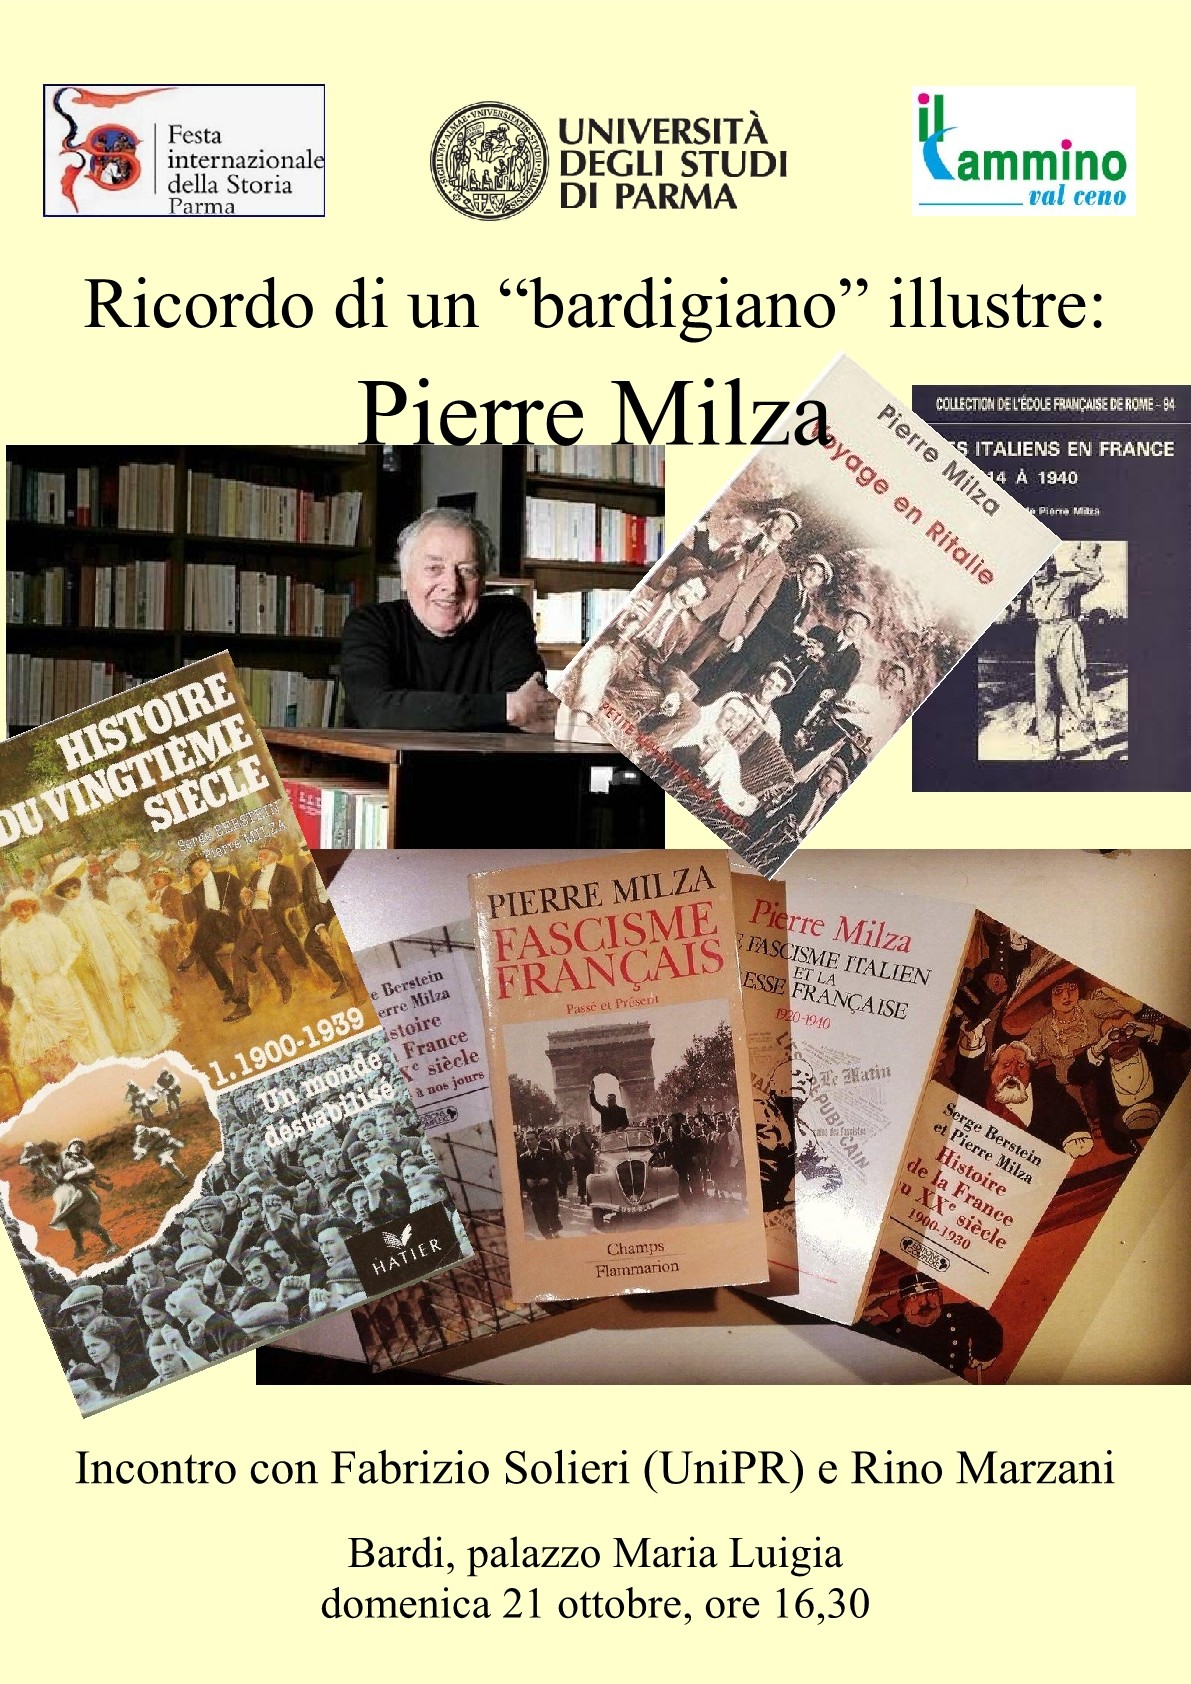 Festa internazionale della storia a Bardi: incontro su Pierre Milza